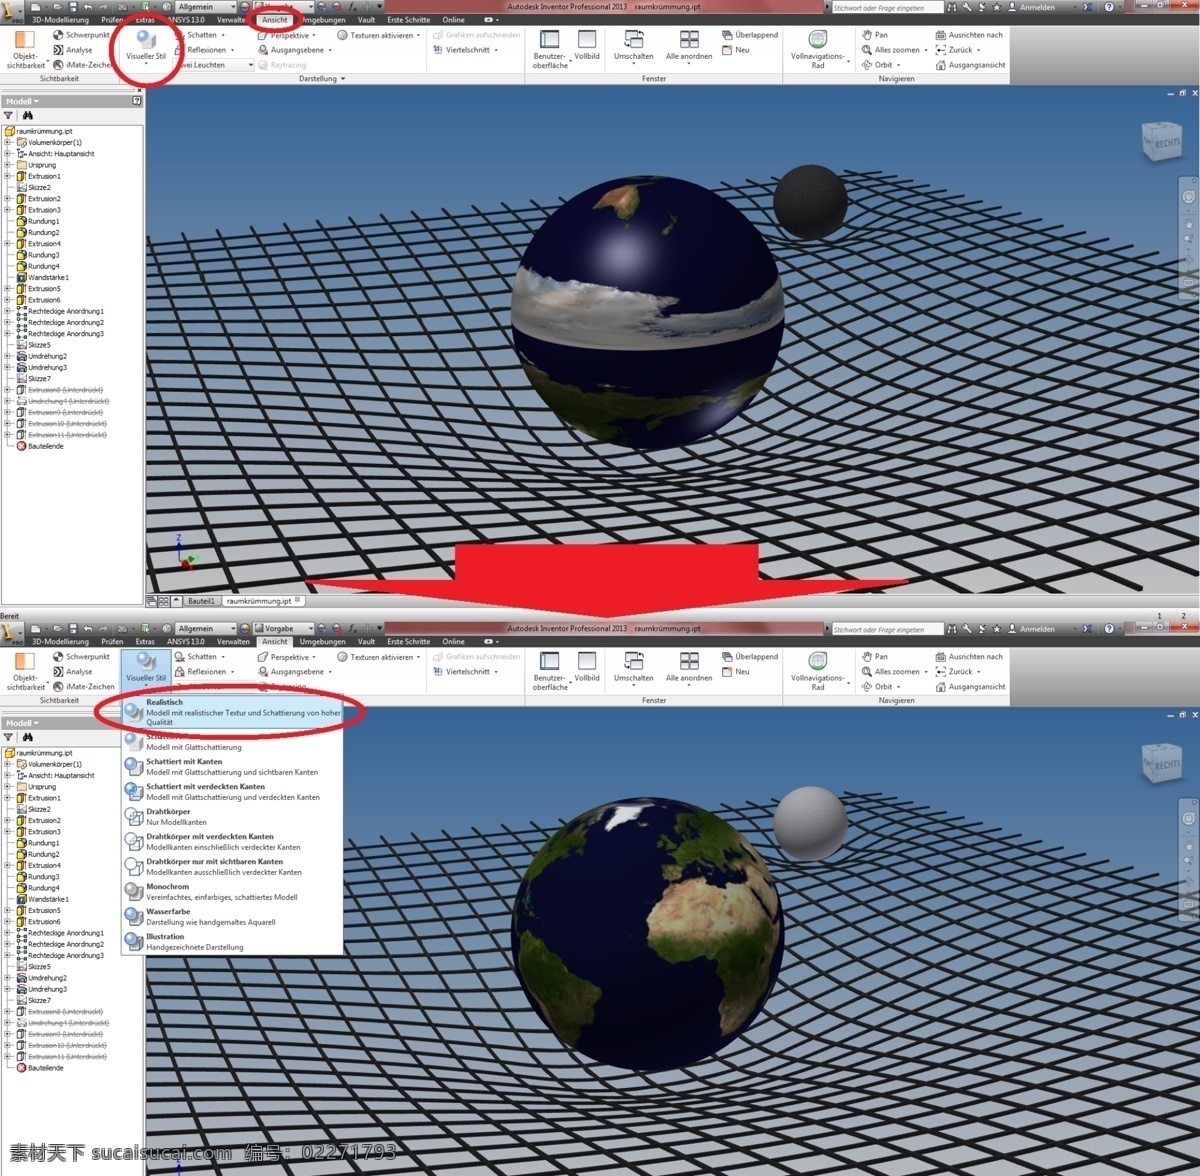 空间 曲率 地球 扭曲 弯曲 3d模型素材 建筑模型